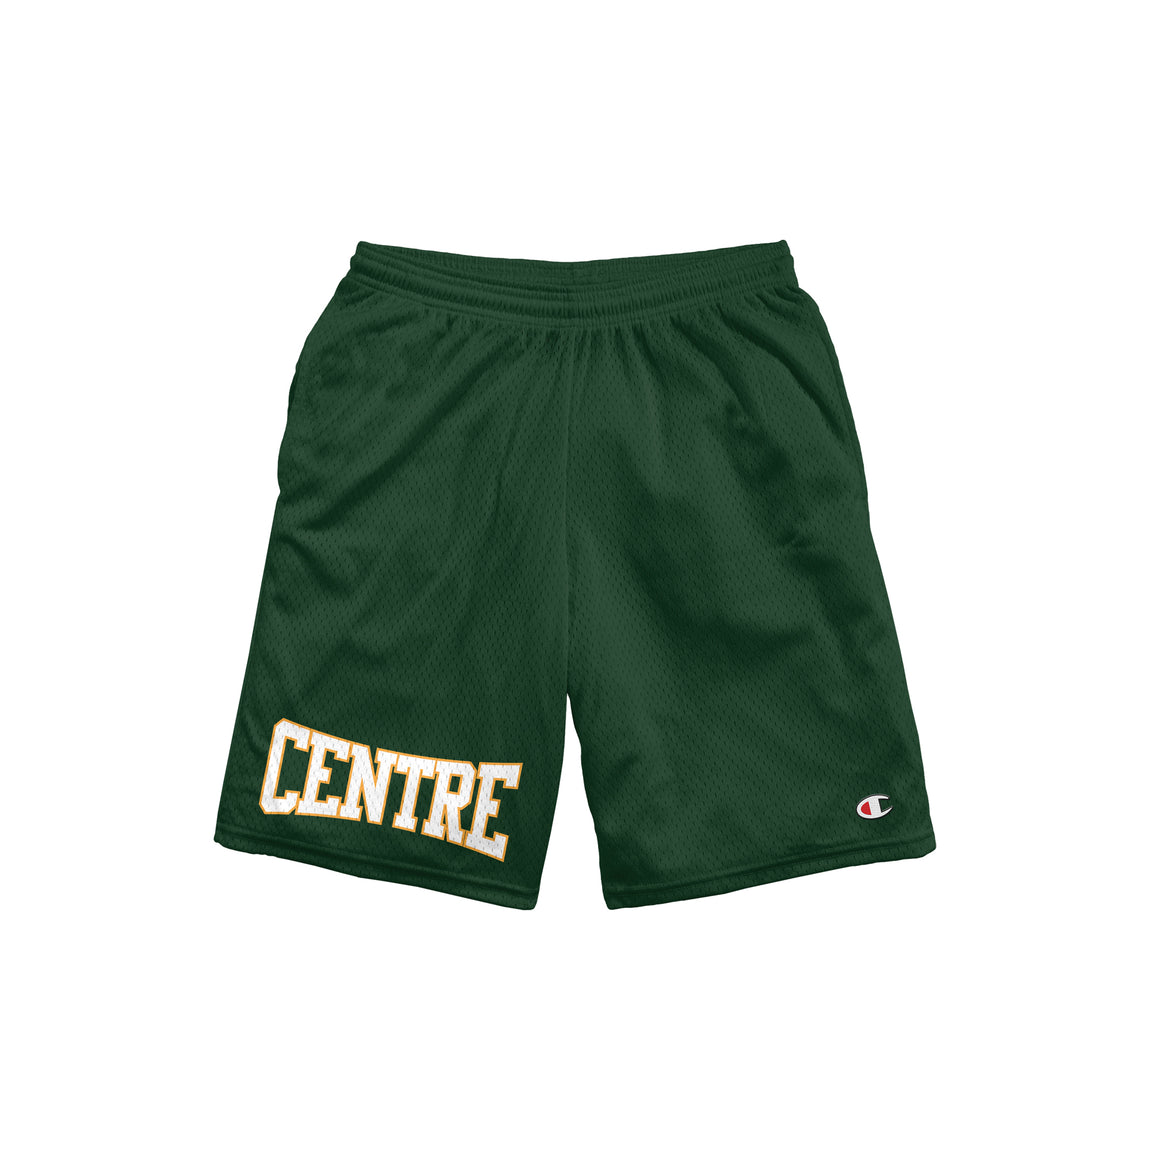 Centre Gridiron Shorts (Dark Green) - Centre Gridiron Shorts (Dark Green) - 